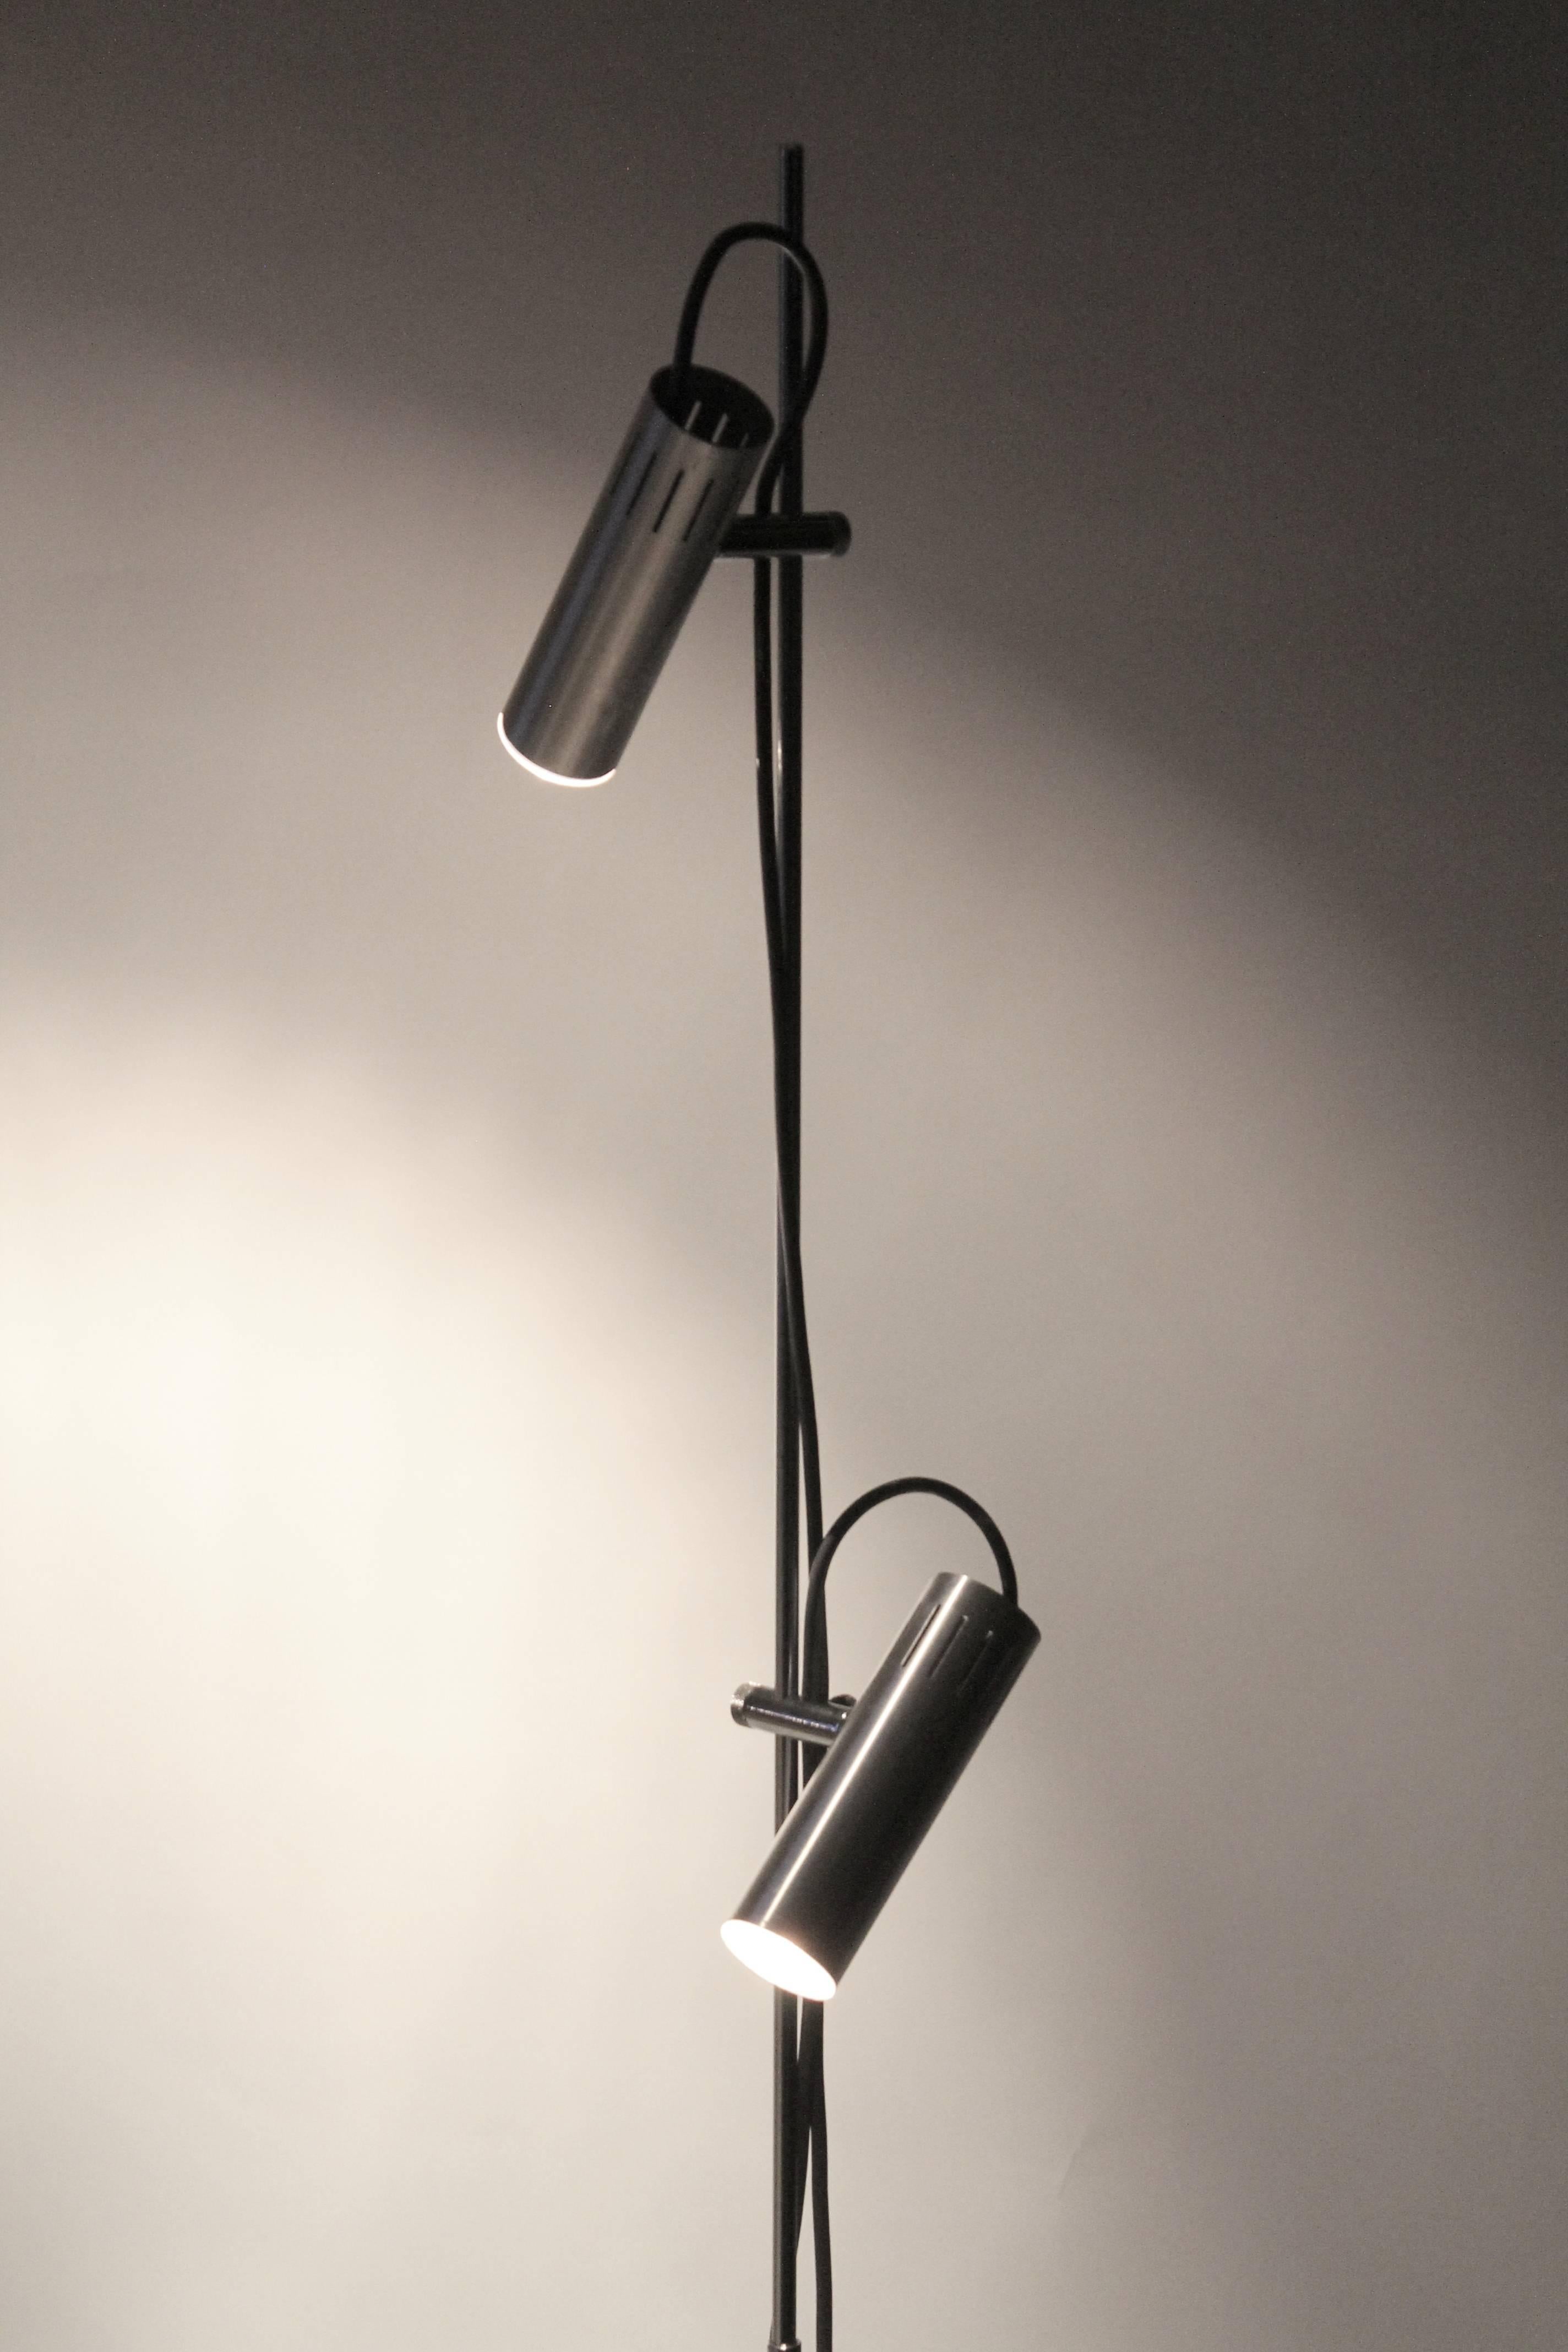 Mid-Century Modern Alain Richard A14 by Disderot Twin Shade Chromed Floor Lamp, 1959, France